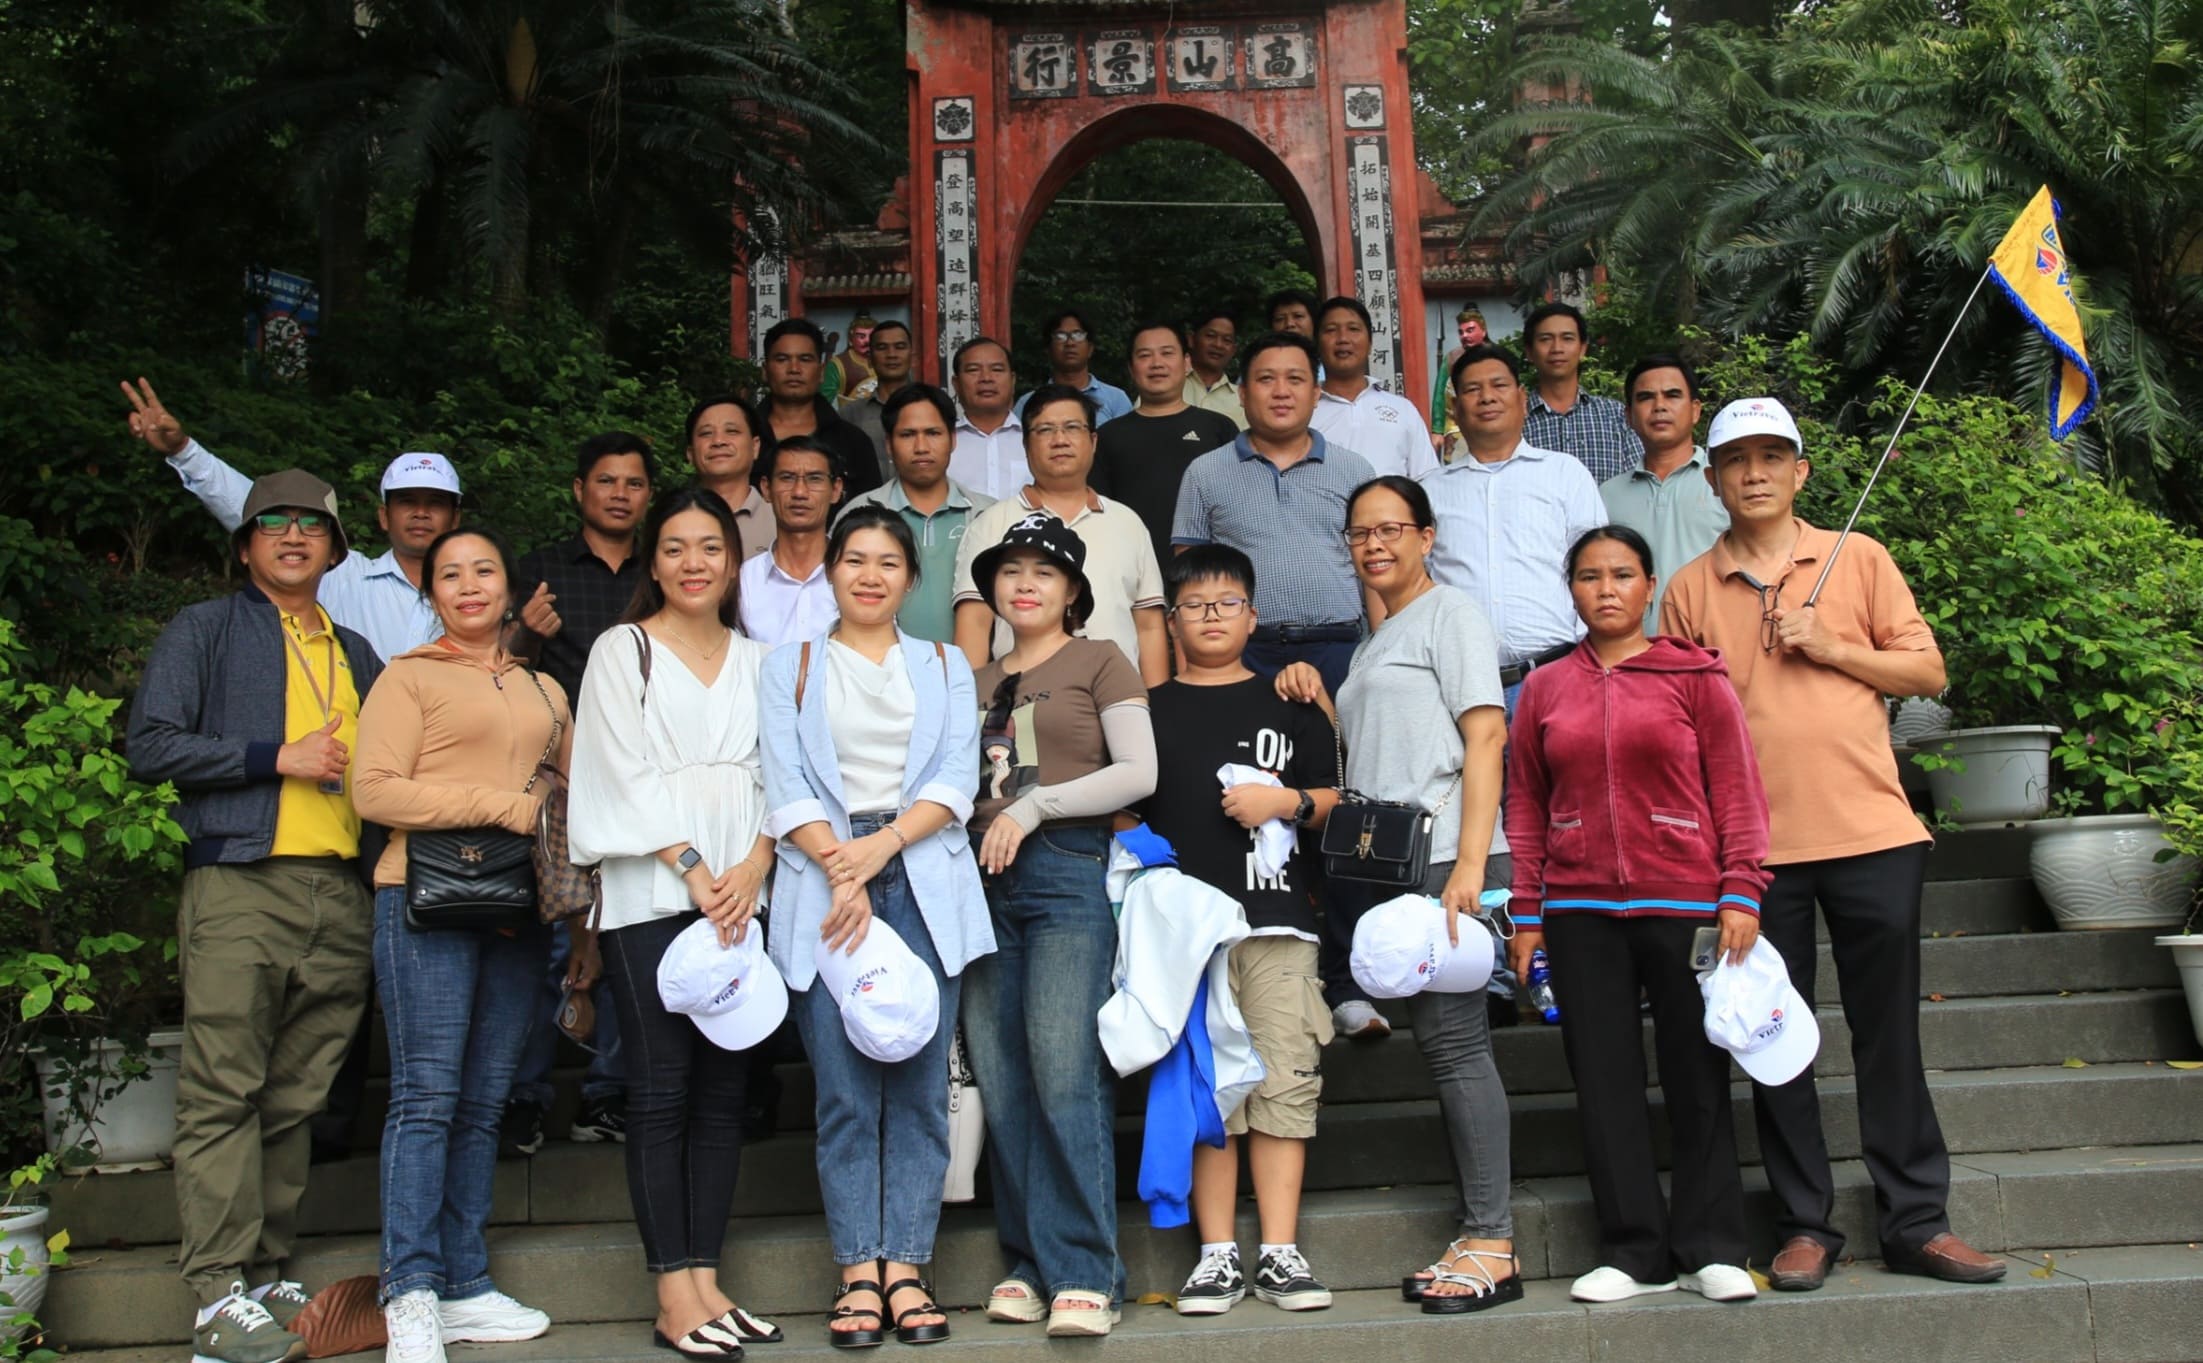 Đoàn công tác của huyện Ba Tơ, tỉnh Quảng Ngãi học tập kinh nghiệm về triển khai về chương trình phát triển kinh tế - xã hội vùng đồng bào dân tộc thiểu số tại các tỉnh phía Bắc